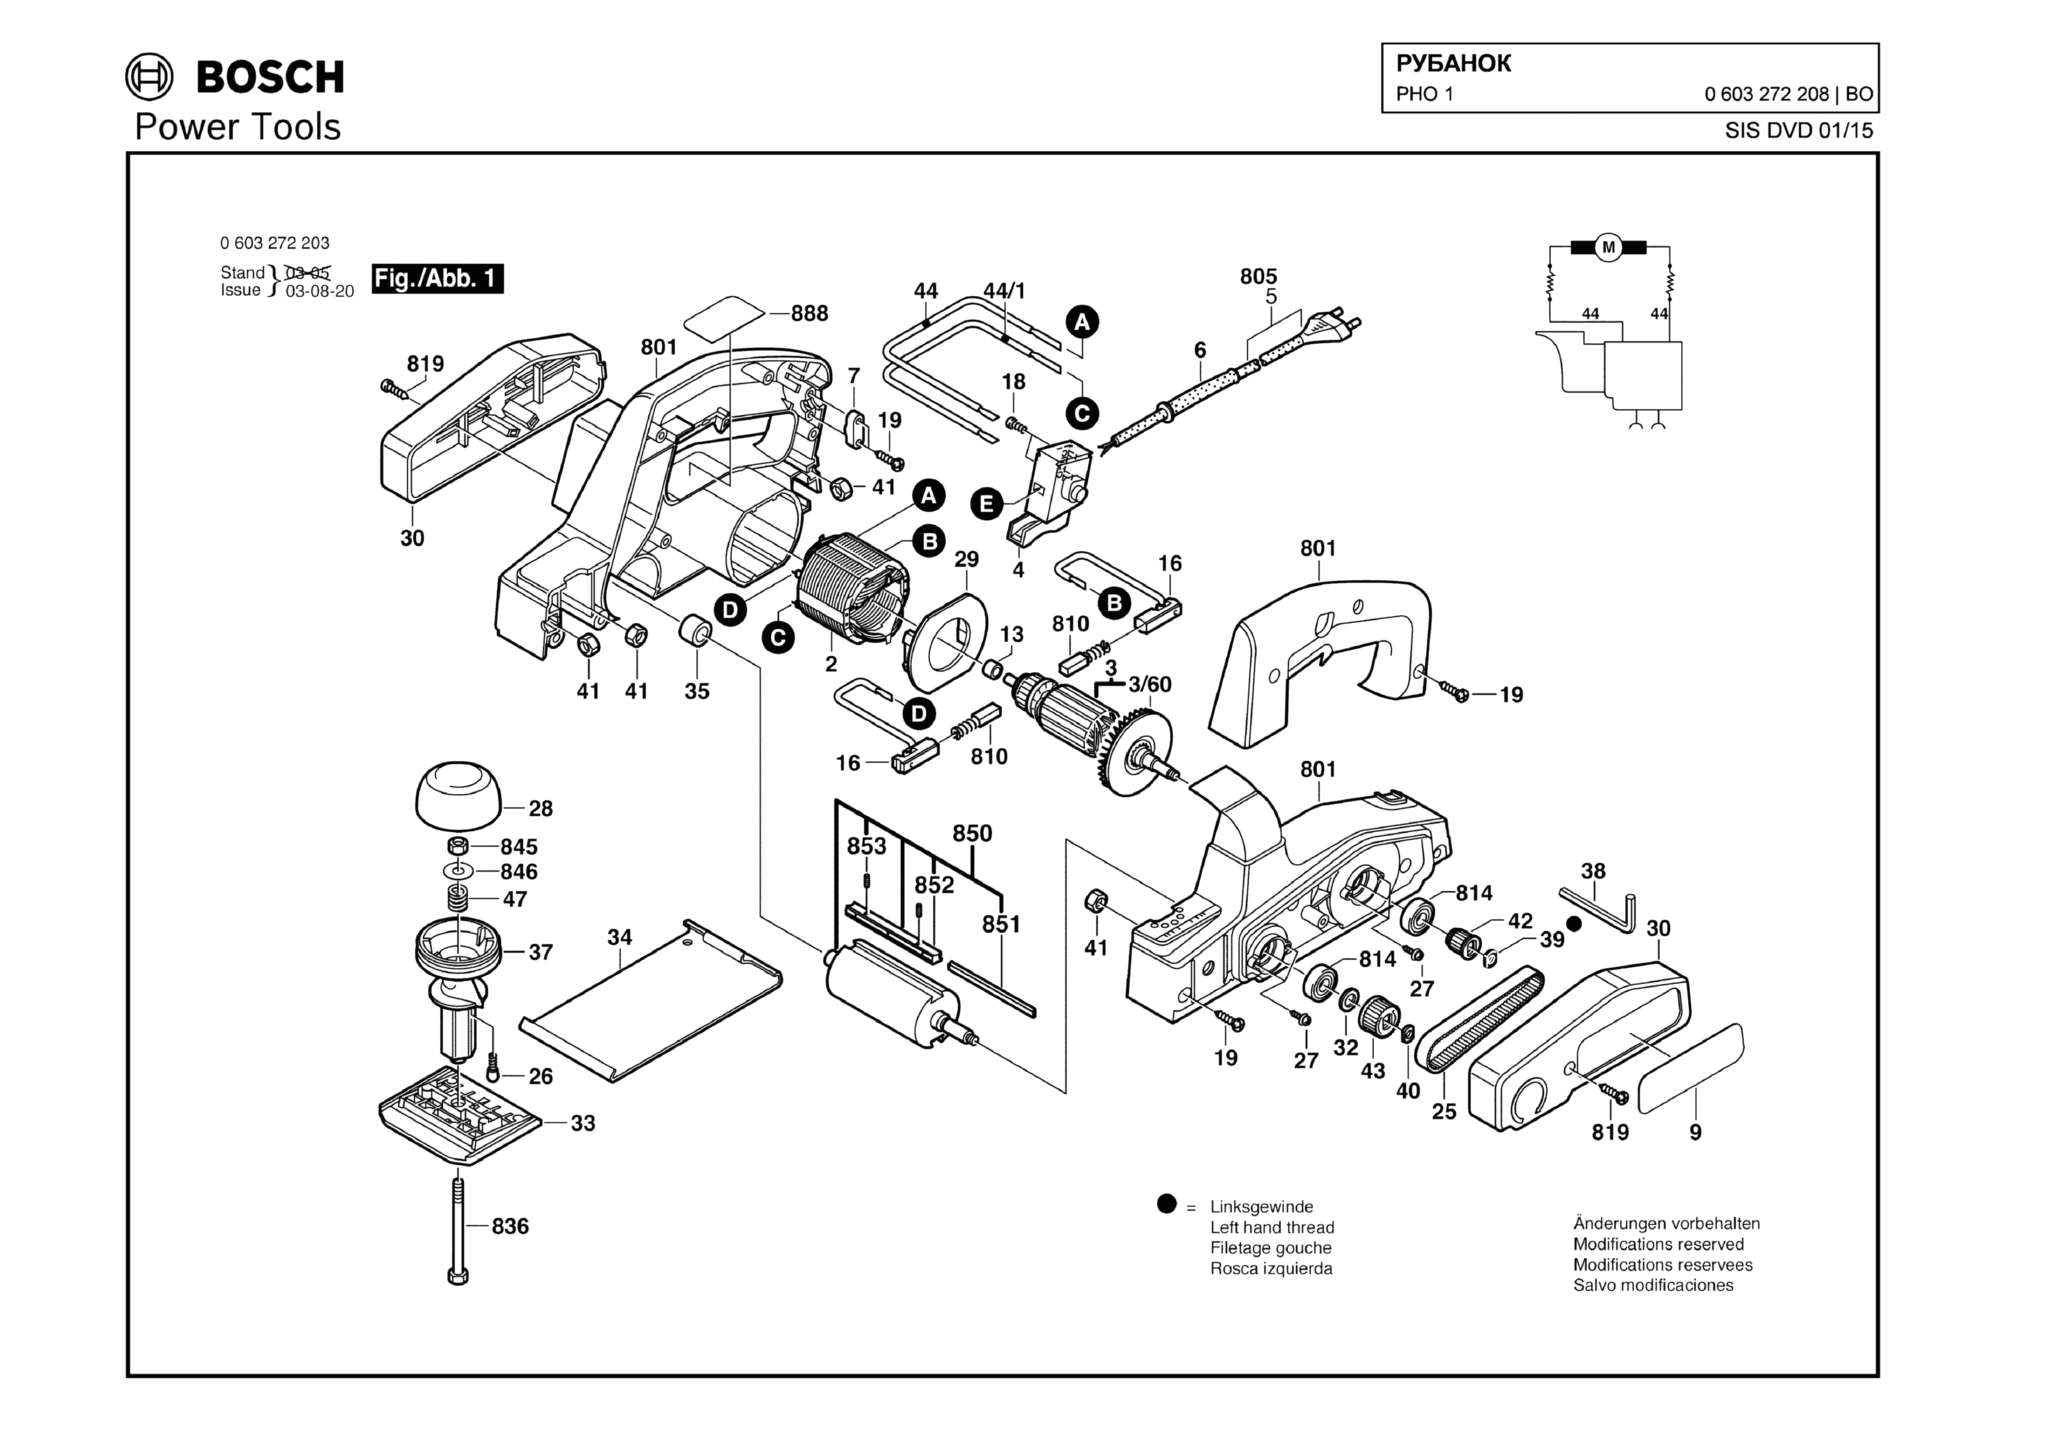 Запчасти, схема и деталировка Bosch PHO 1 (ТИП 0603272208)